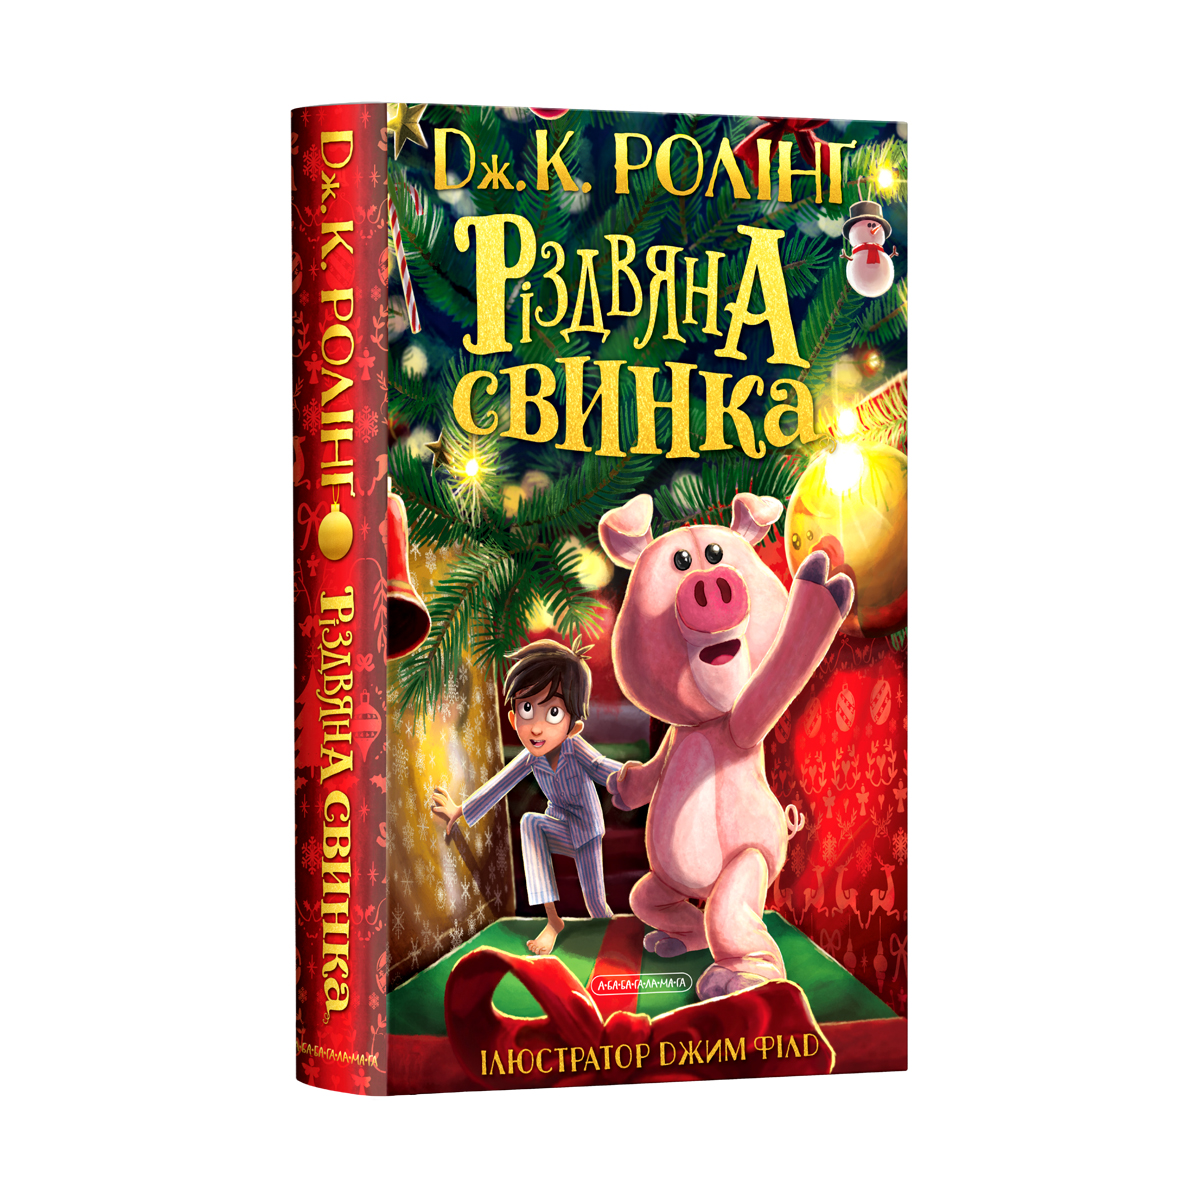 Christmas Pig book cover